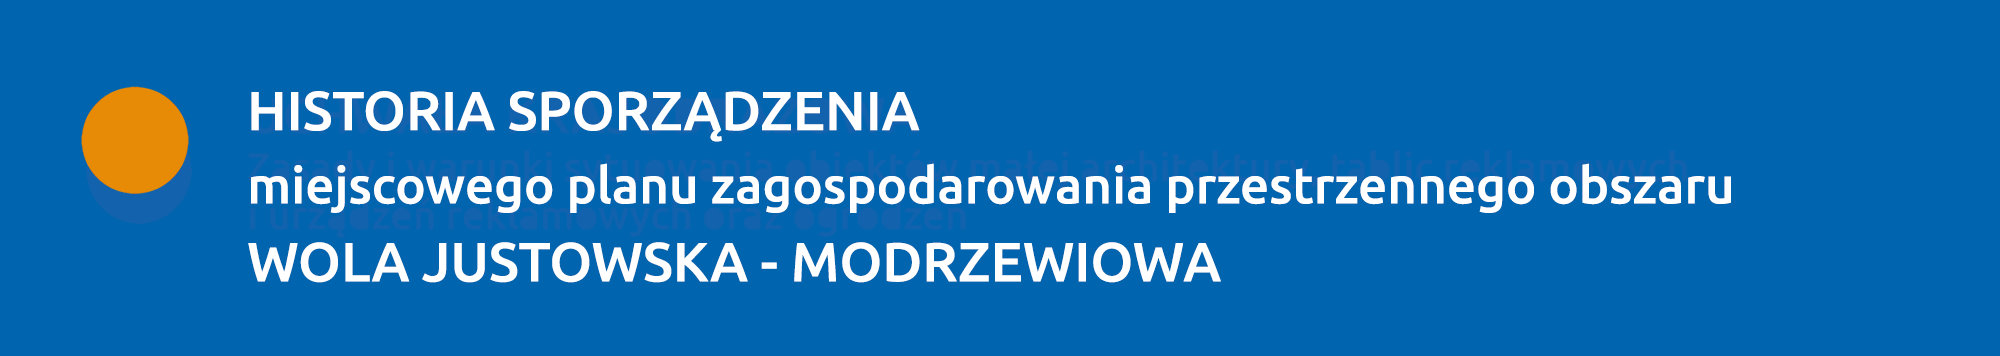 Historia sporządzenia planu WOLA JUSTOWSKA - MODRZEWIOWA